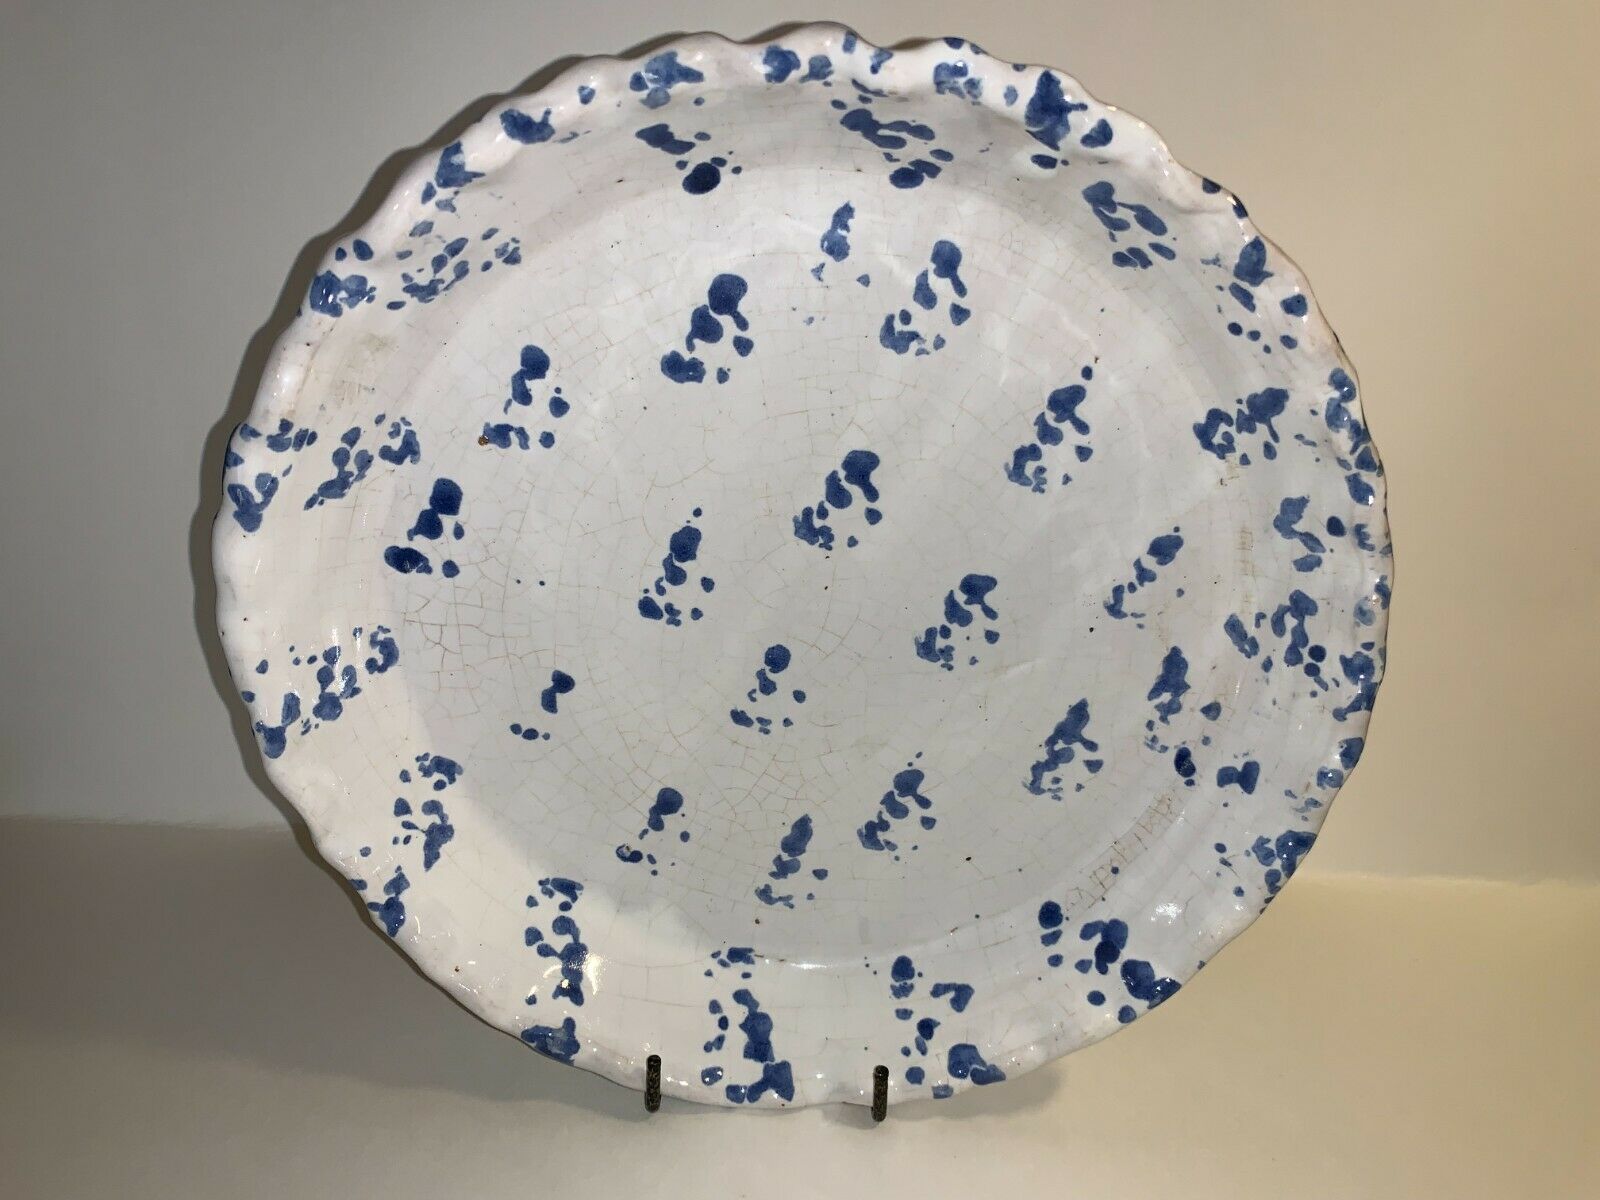 Bybee Kentucky Pottery Spongeware Ruffle Rim Pie Plate Blue Sponge On White